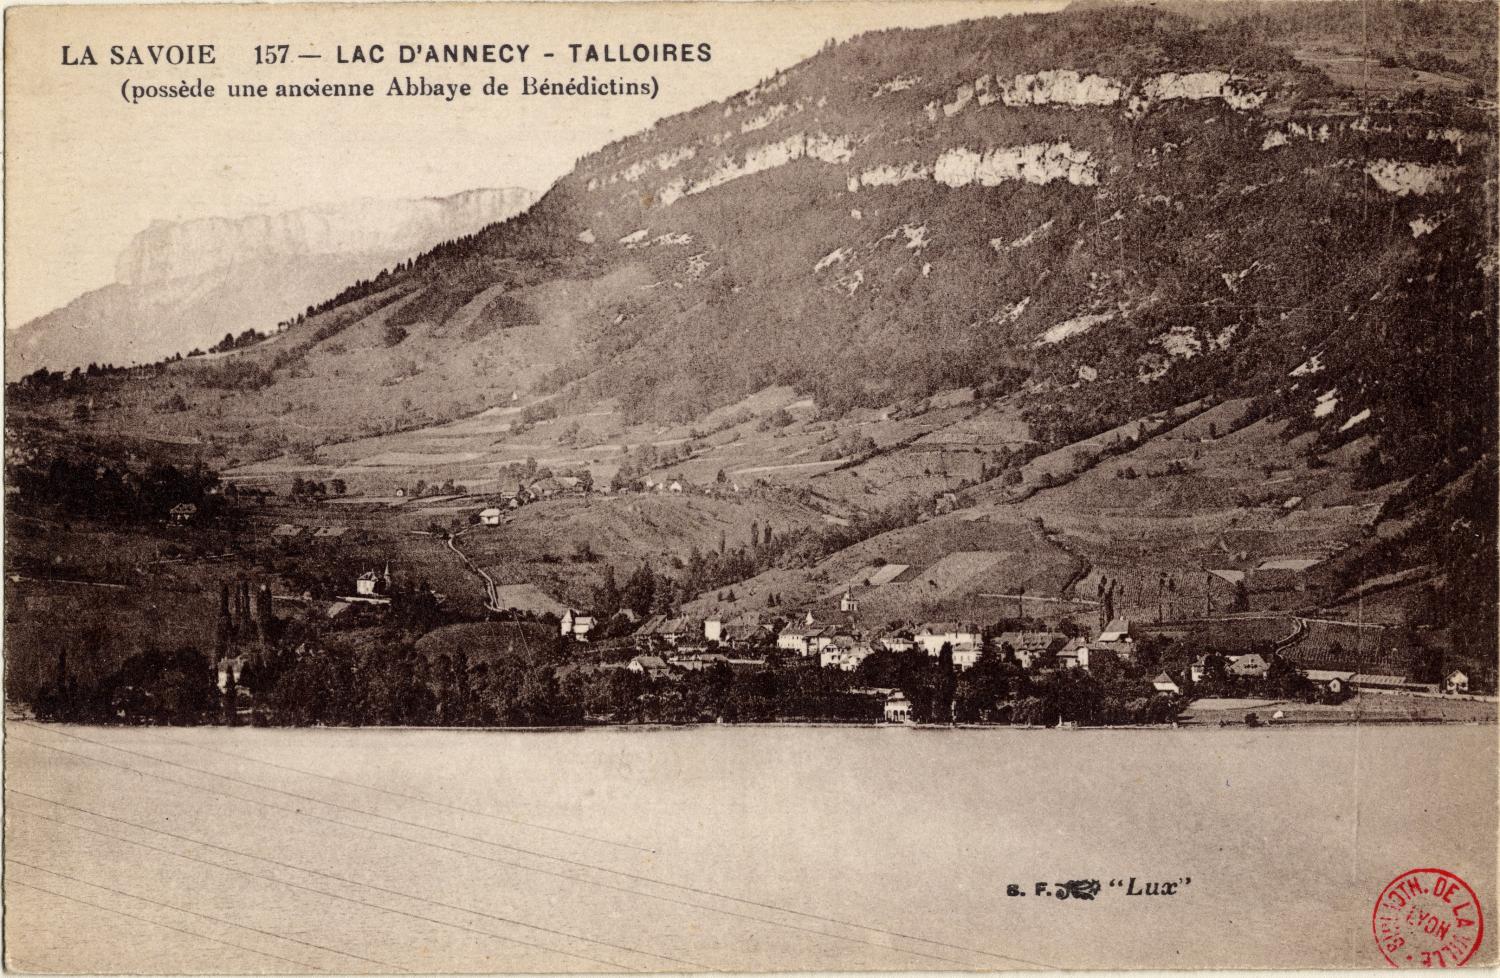 La Savoie : Lac d'Annecy ; Talloires (possède une ancienne Abbaye de Bénédictins)